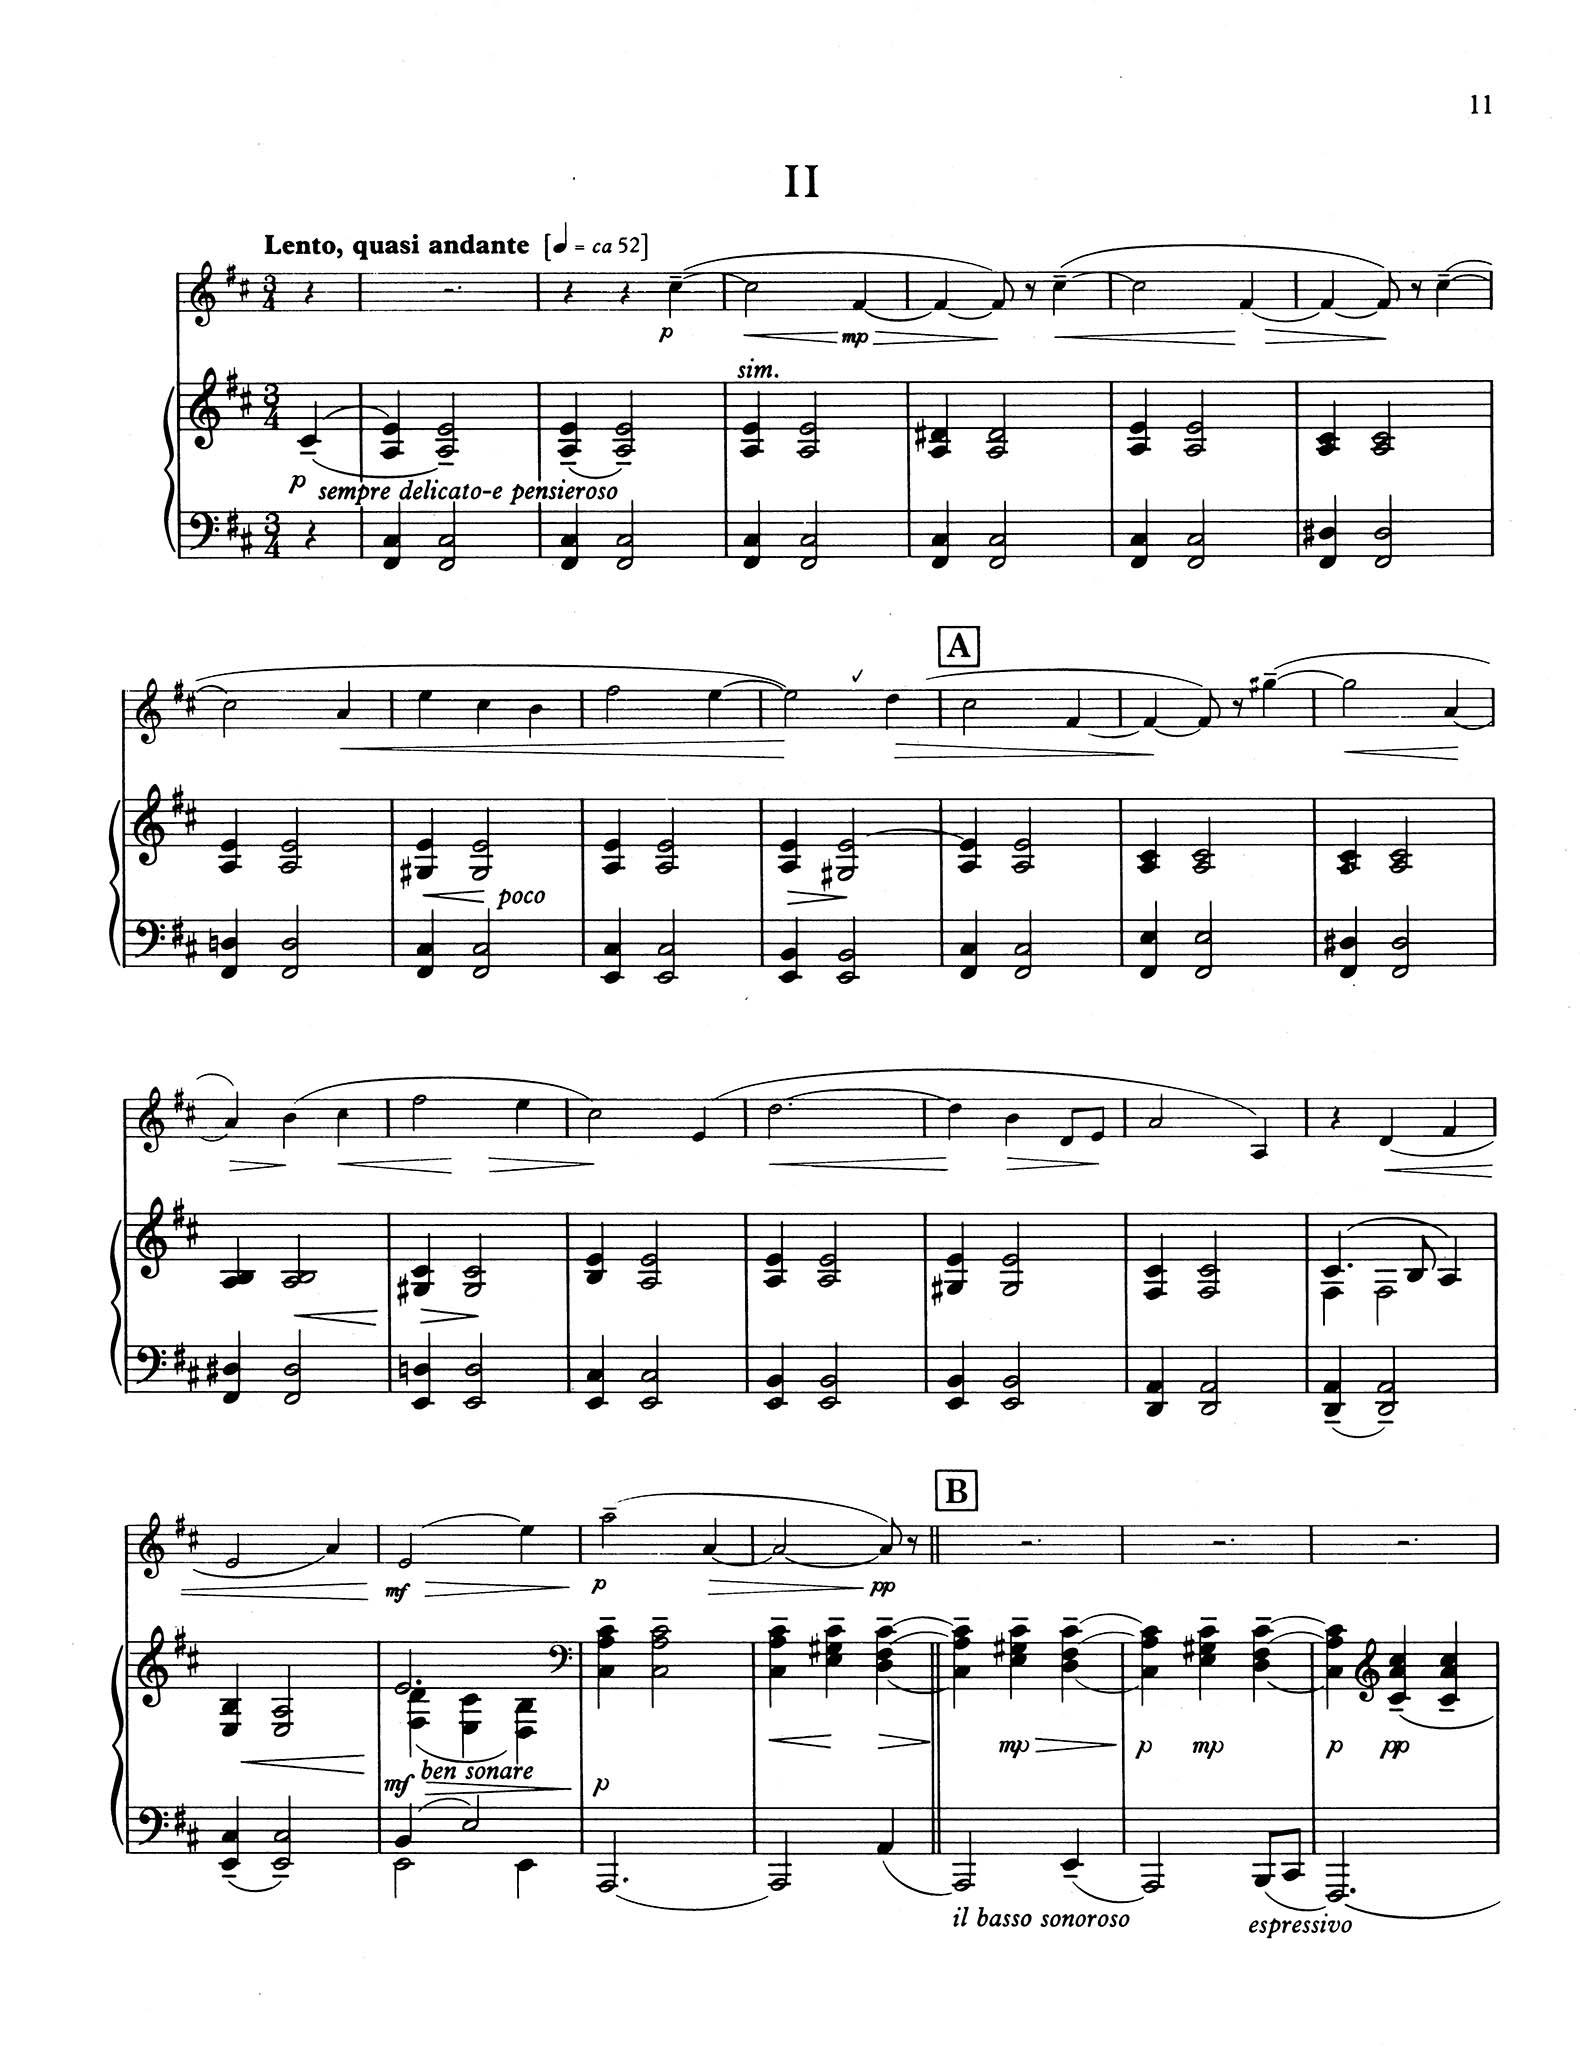 Sonatina for Clarinet & Piano - Movement 2